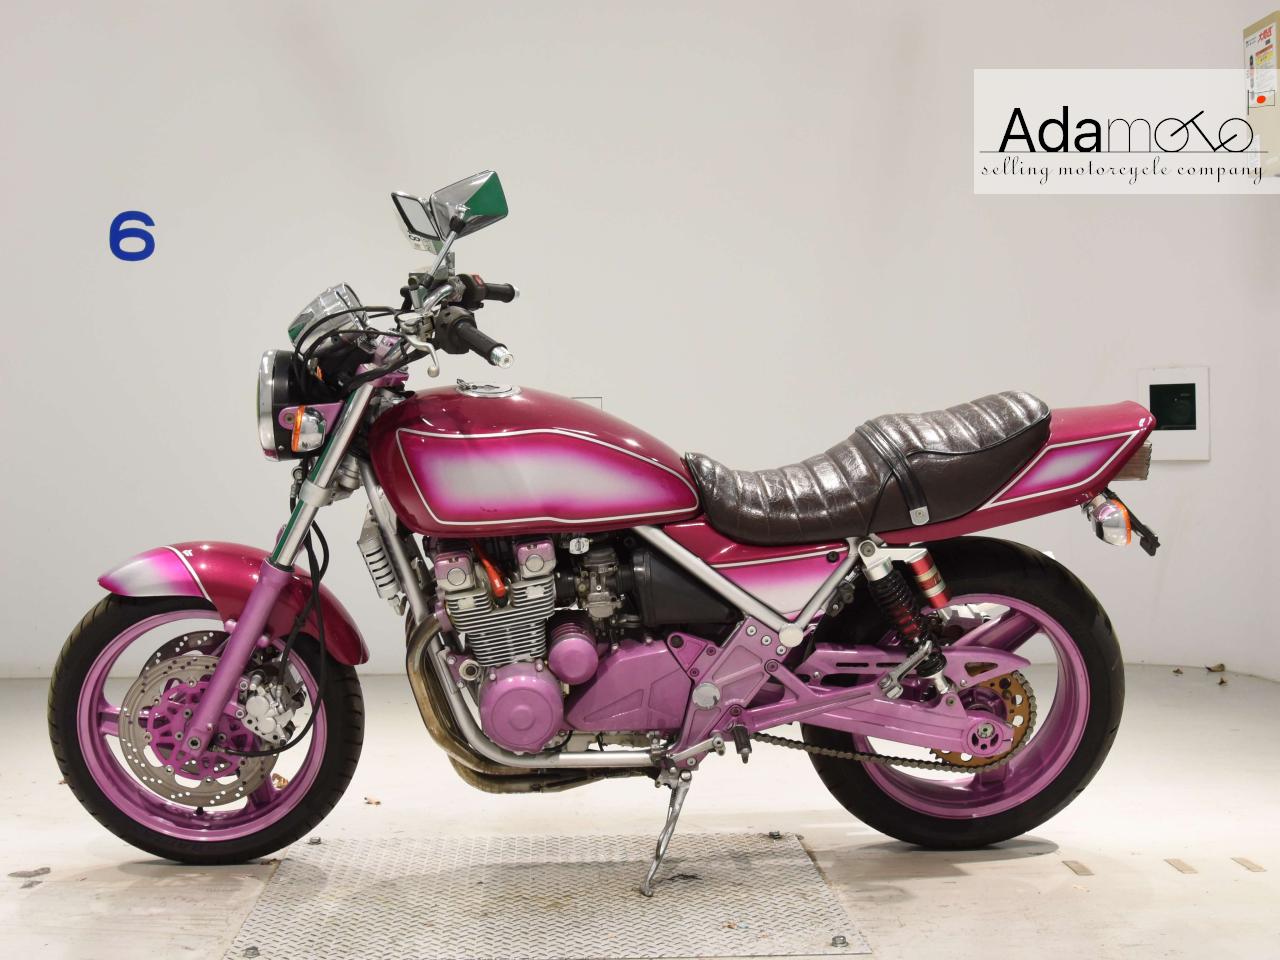 Kawasaki ZEPHYR400 2 - Adamoto - Motorcycles from Japan